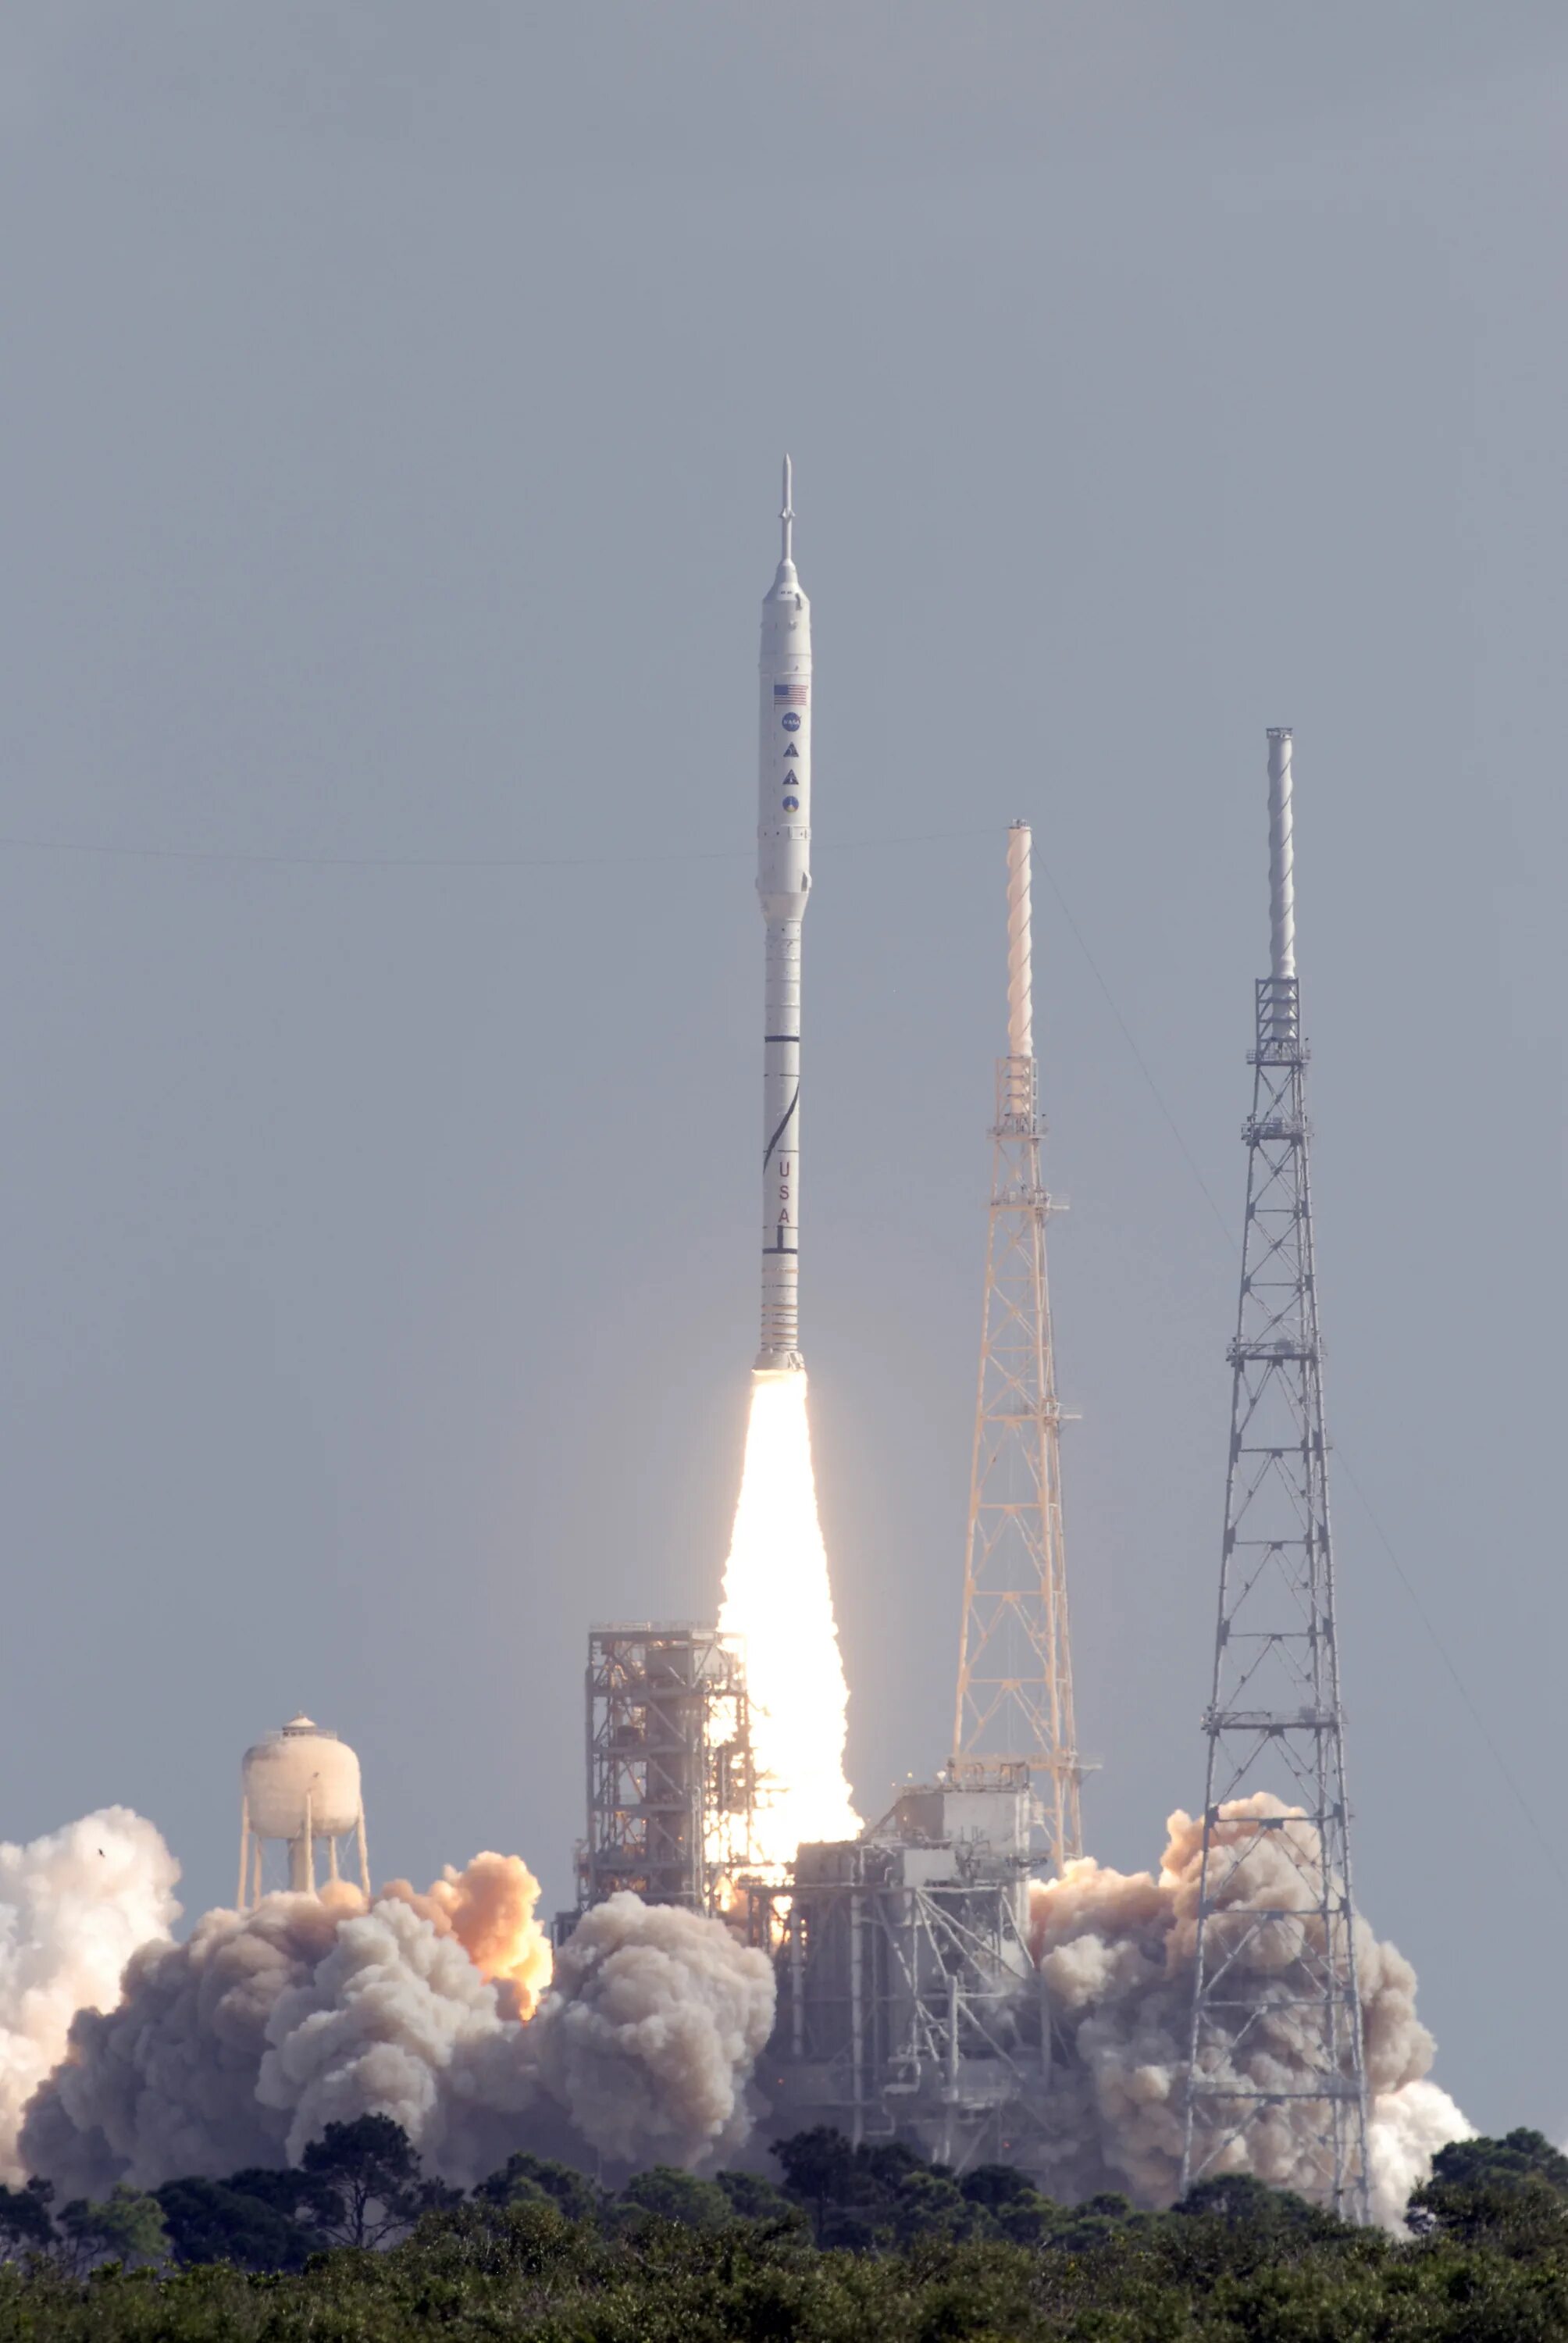 Ares 1 16. Арес 12 ракета. РН Арес 1. Арес-1 ракета-носитель. Испытательная ракета.